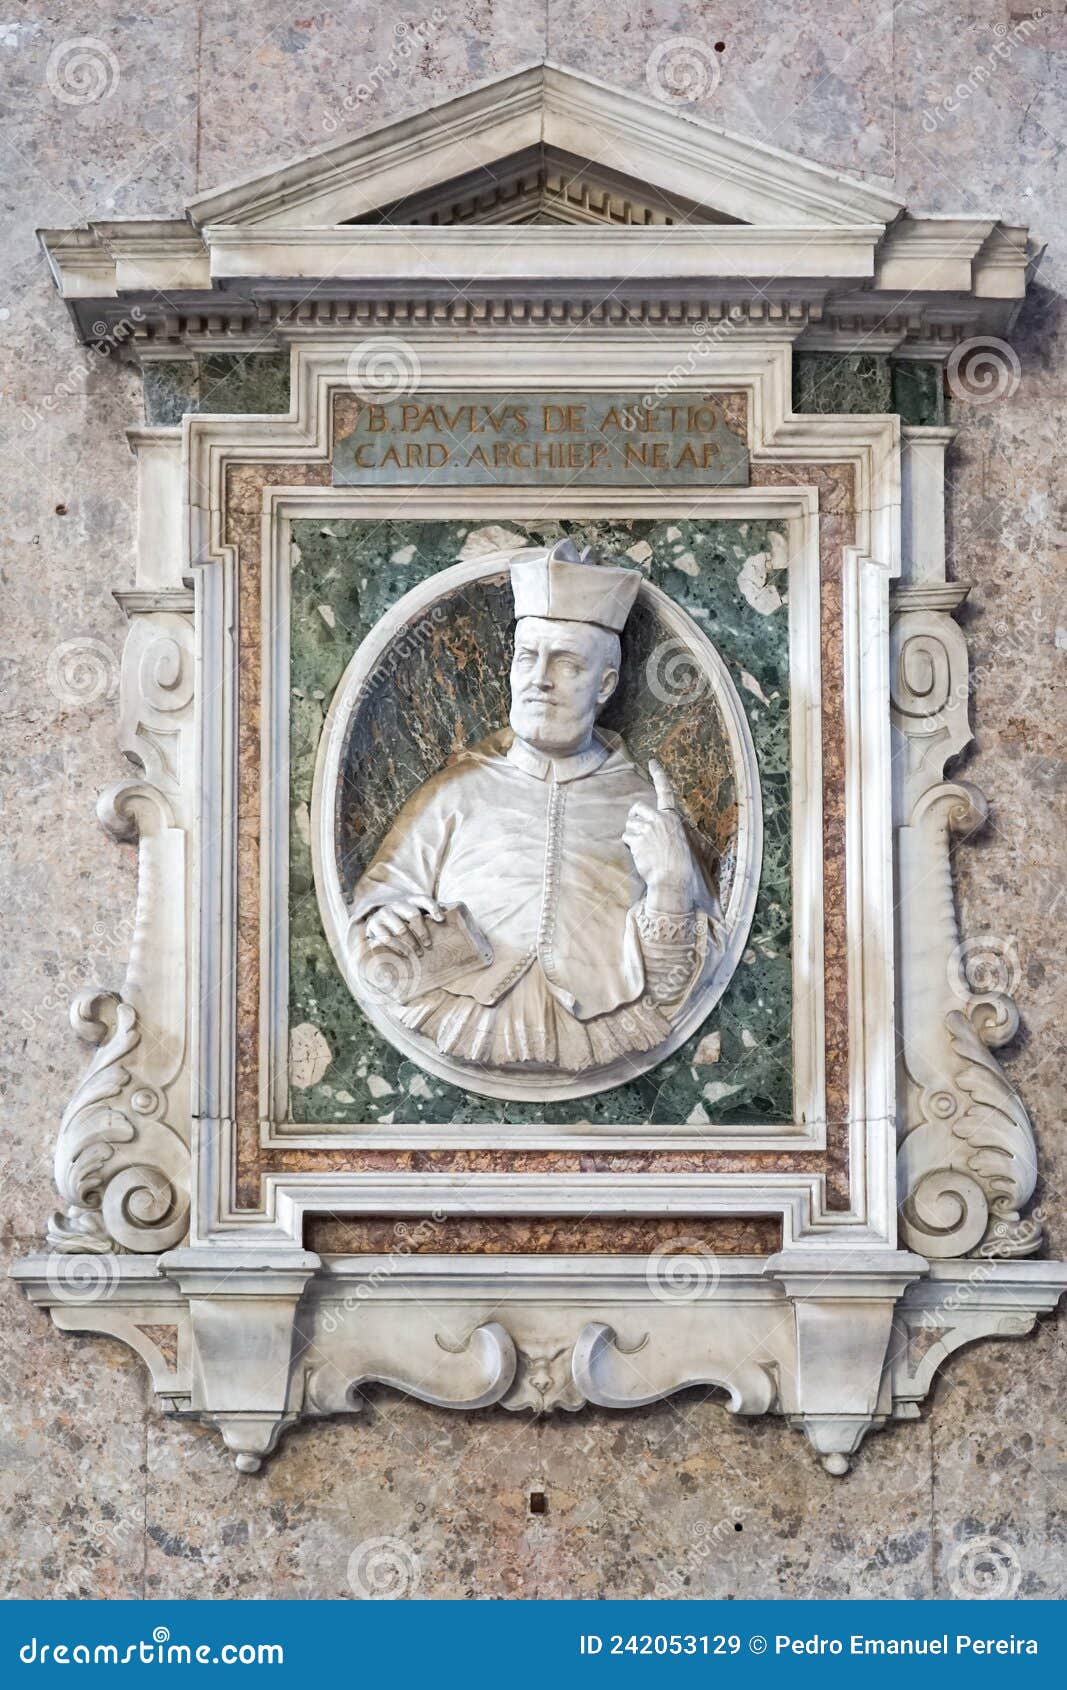 b pavlus de aretio card.  archiep.neap.inside the basilica of santa maria del principio in naples, italy.